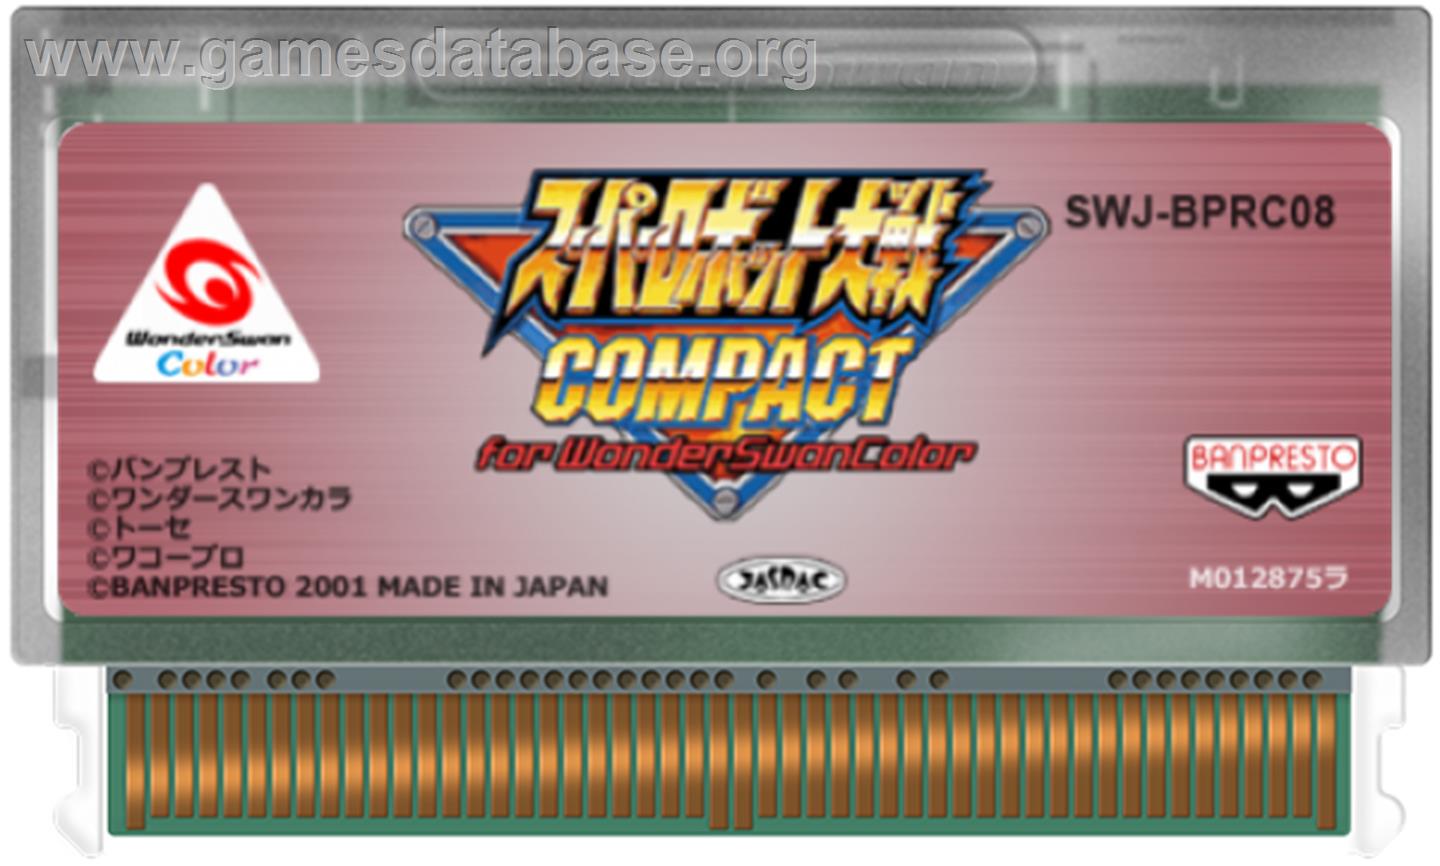 Super Robot Wars Compact - Bandai WonderSwan Color - Artwork - Cartridge